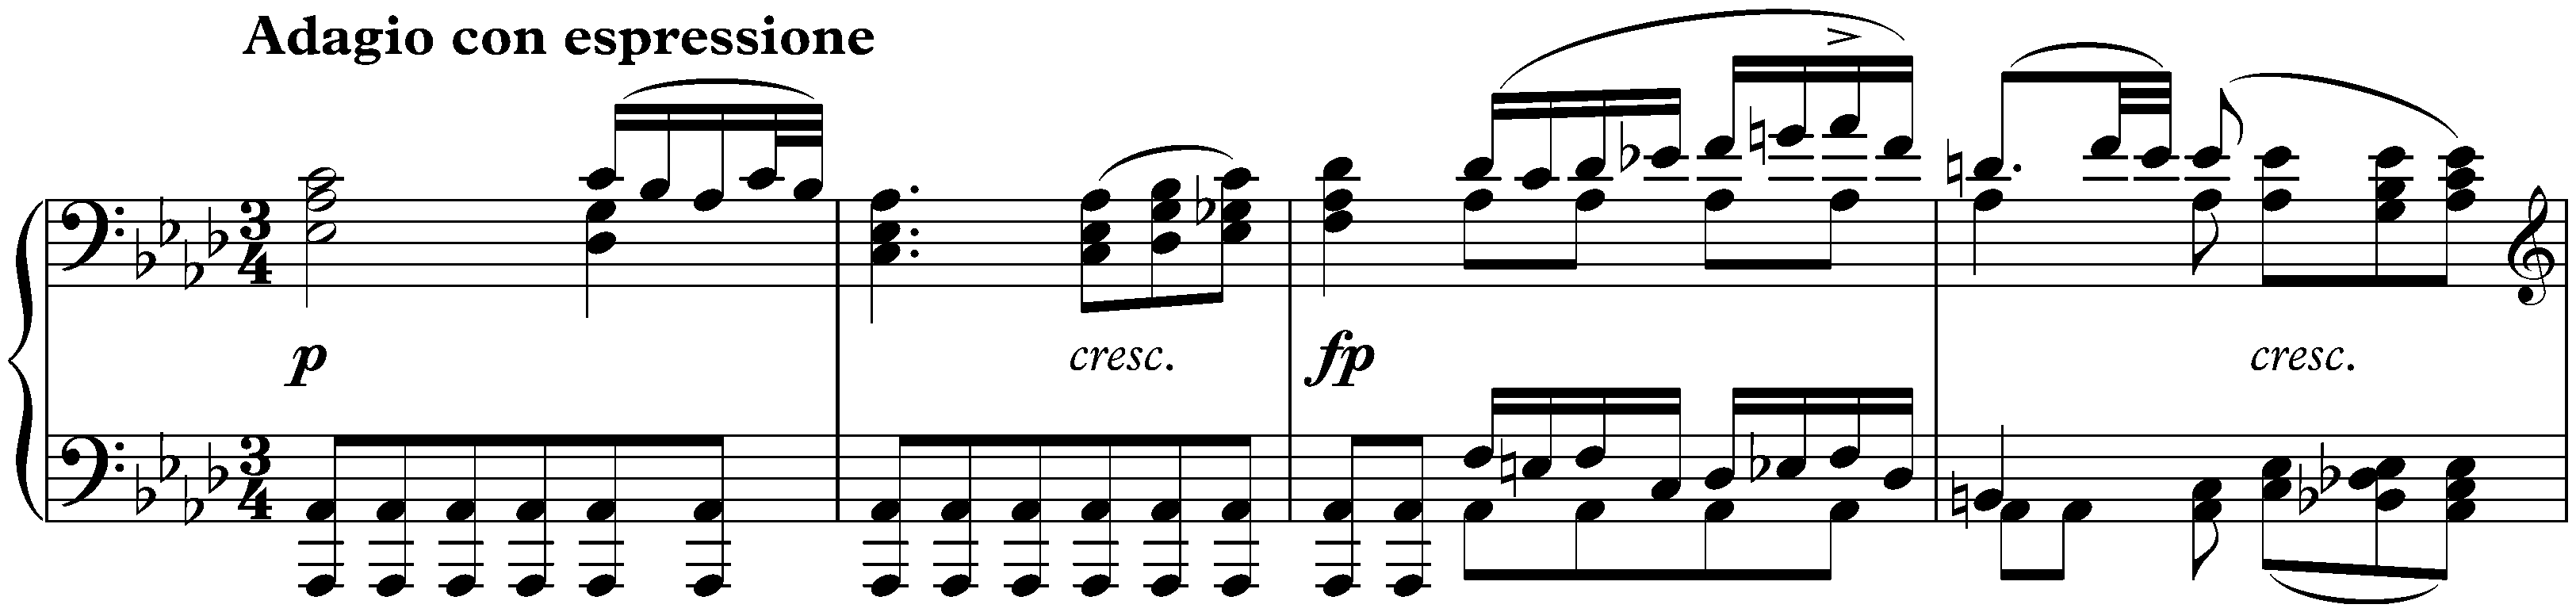 Sonata no. 13 in E-flat major, op. 27 no. 1; 3. Adagio con espressione